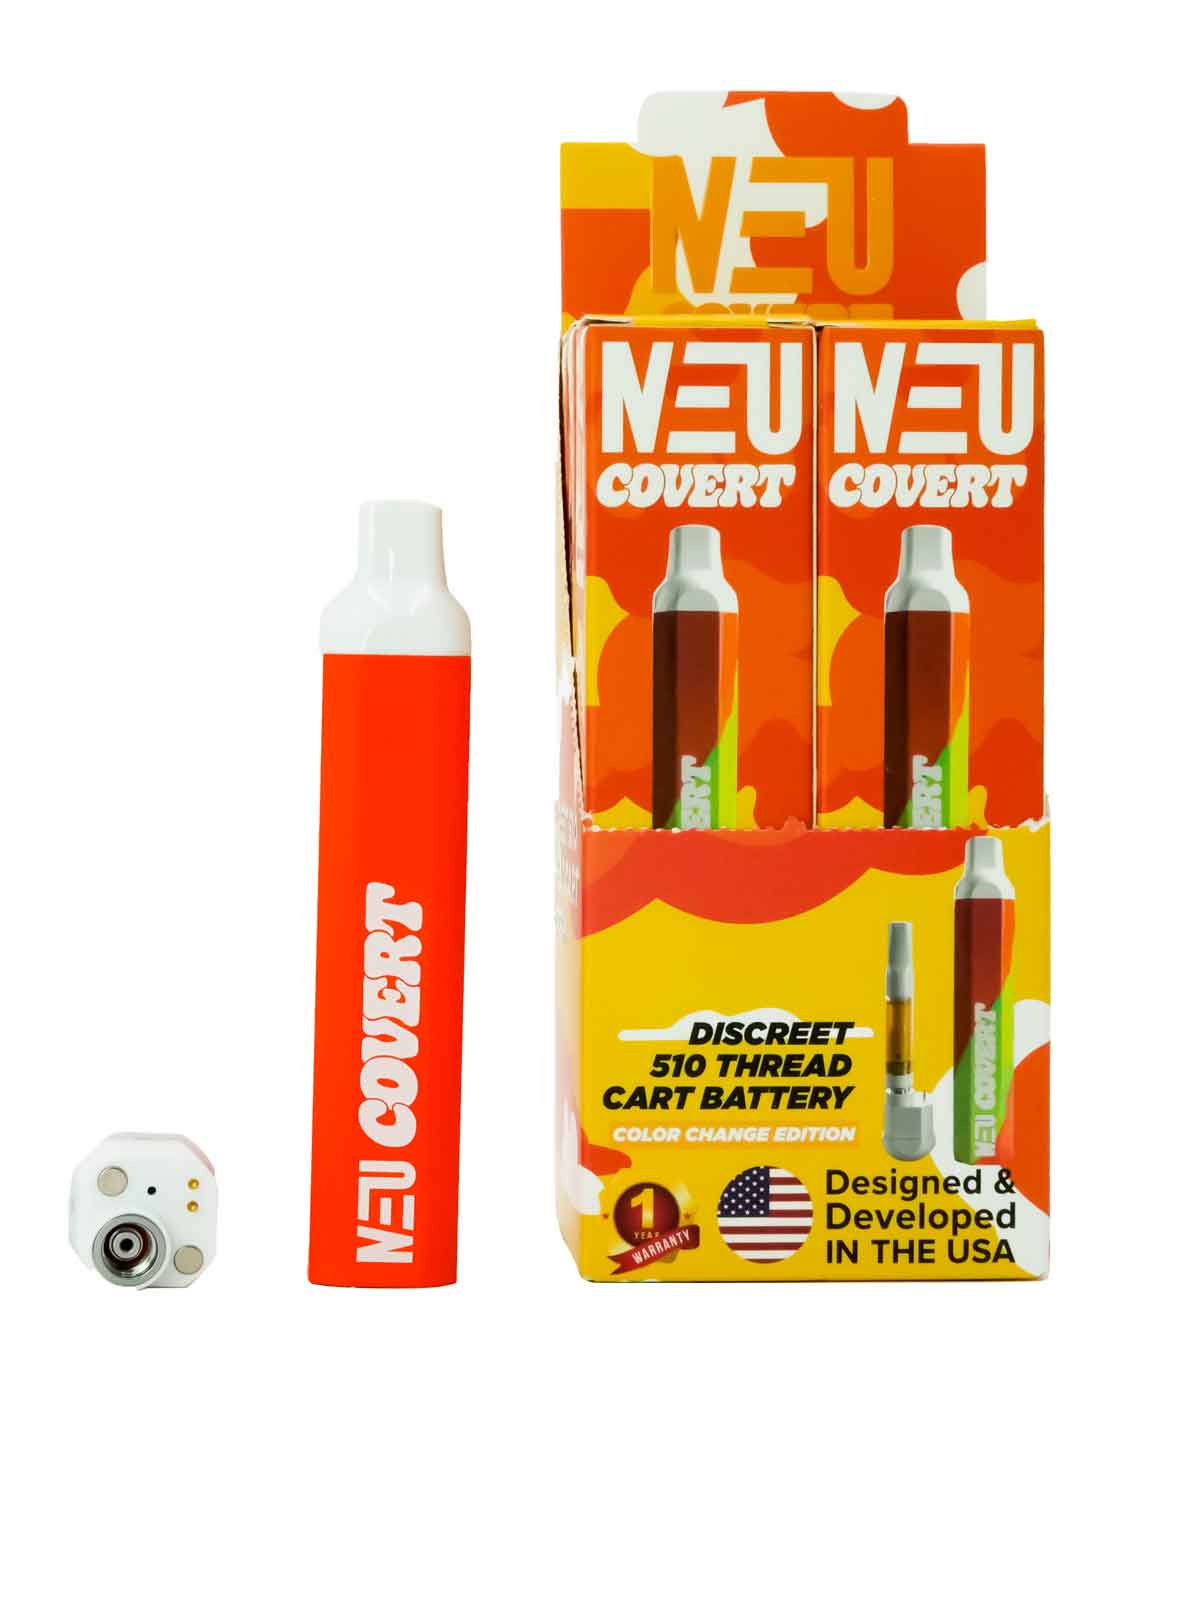 Covert Neu - 510 Cart Battery